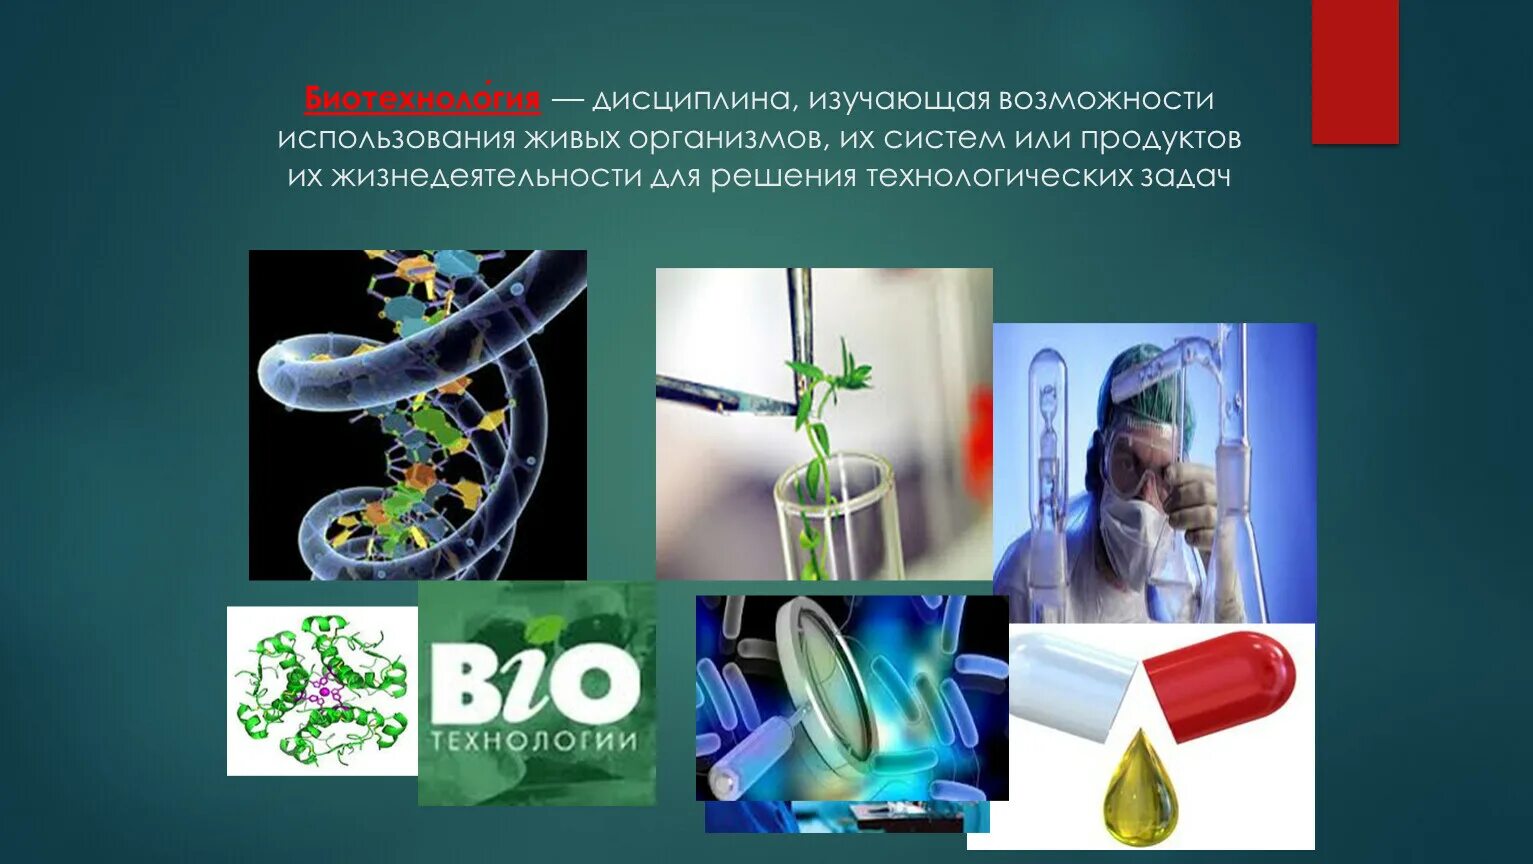 Микробиология и биотехнология. Биотехнология это дисциплина. Биотехнология дисциплина изучающая возможности. Биотехнология микробиология. Живые организмы в биотехнологии.